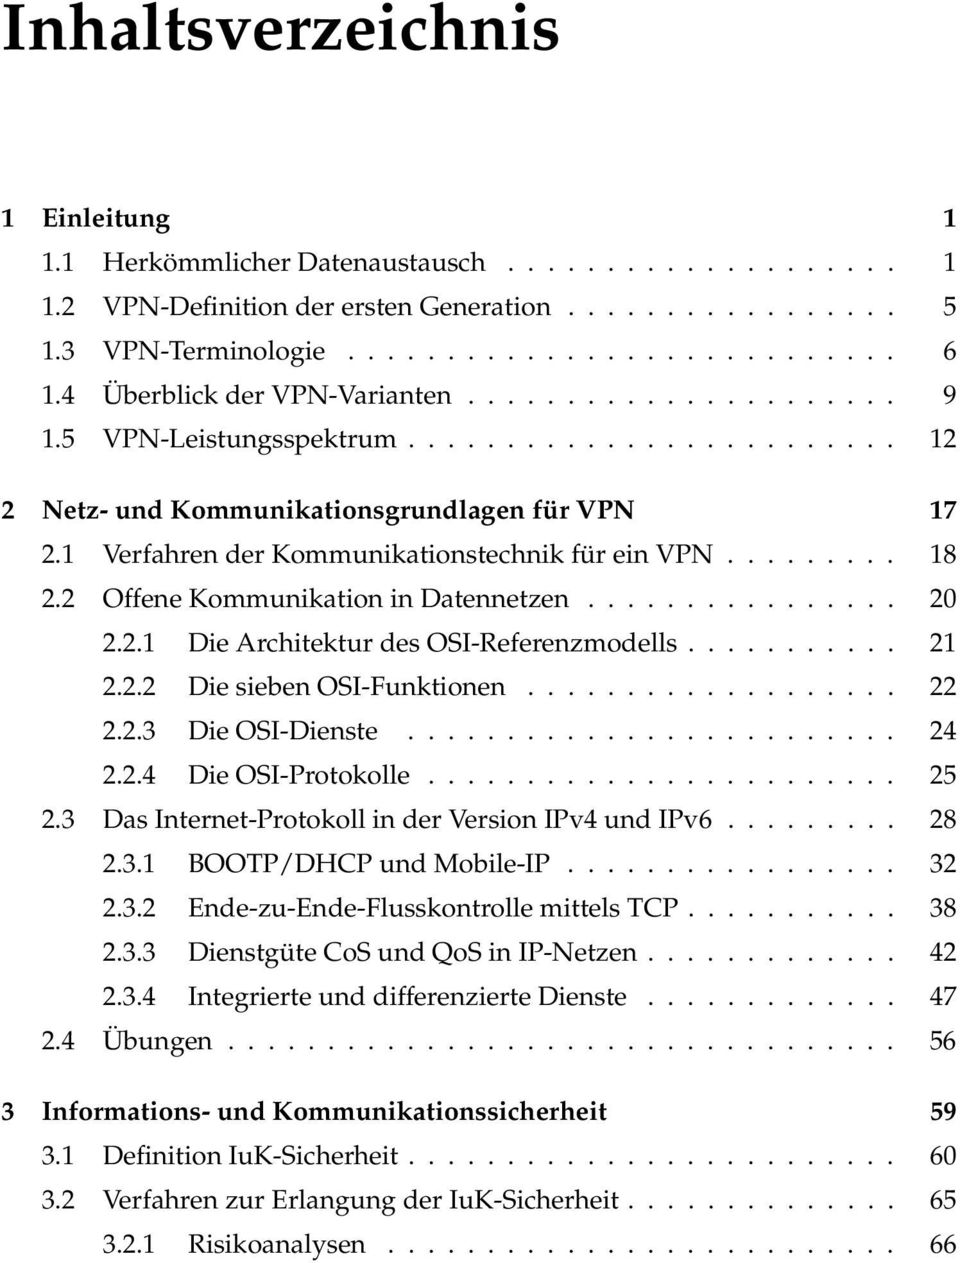 .. 21 2.2.2 Die sieben OSI-Funktionen...... 22 2.2.3 Die OSI-Dienste... 24 2.2.4 Die OSI-Protokolle...... 25 2.3 Das Internet-Protokoll in der Version IPv4 und IPv6...... 28 2.3.1 BOOTP/DHCP und Mobile-IP.